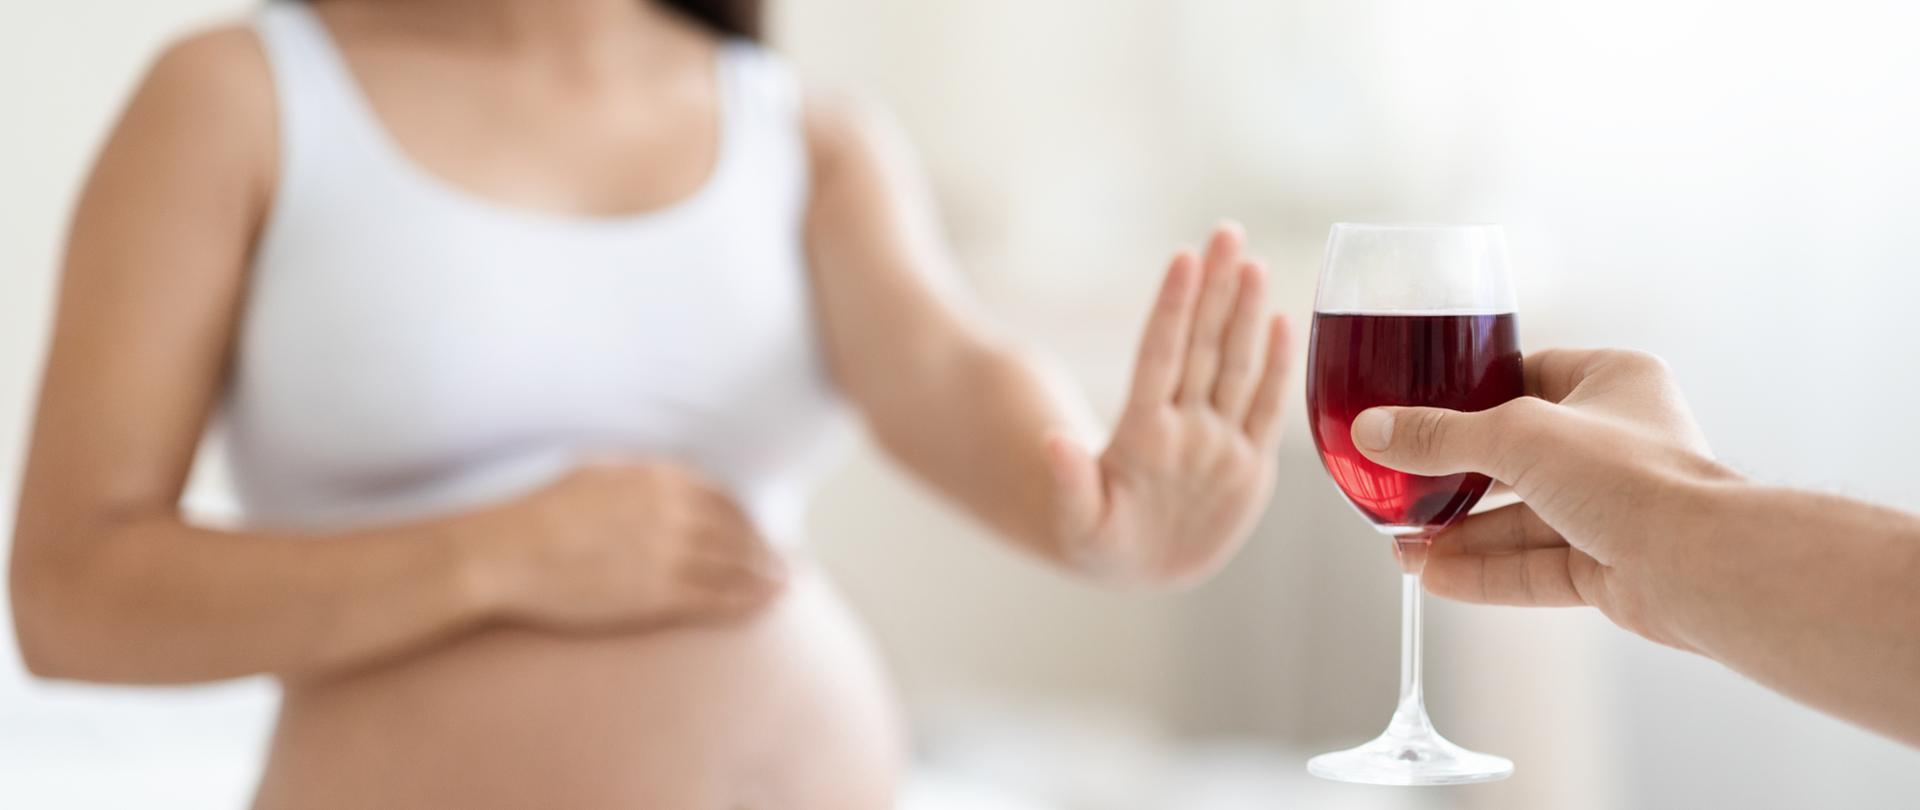 młoda kobieta w ciąży odmawia picia wina, wykonując gest zatrzymania w stronę szklanki, siedząc na łóżku w domu, dotykając brzucha